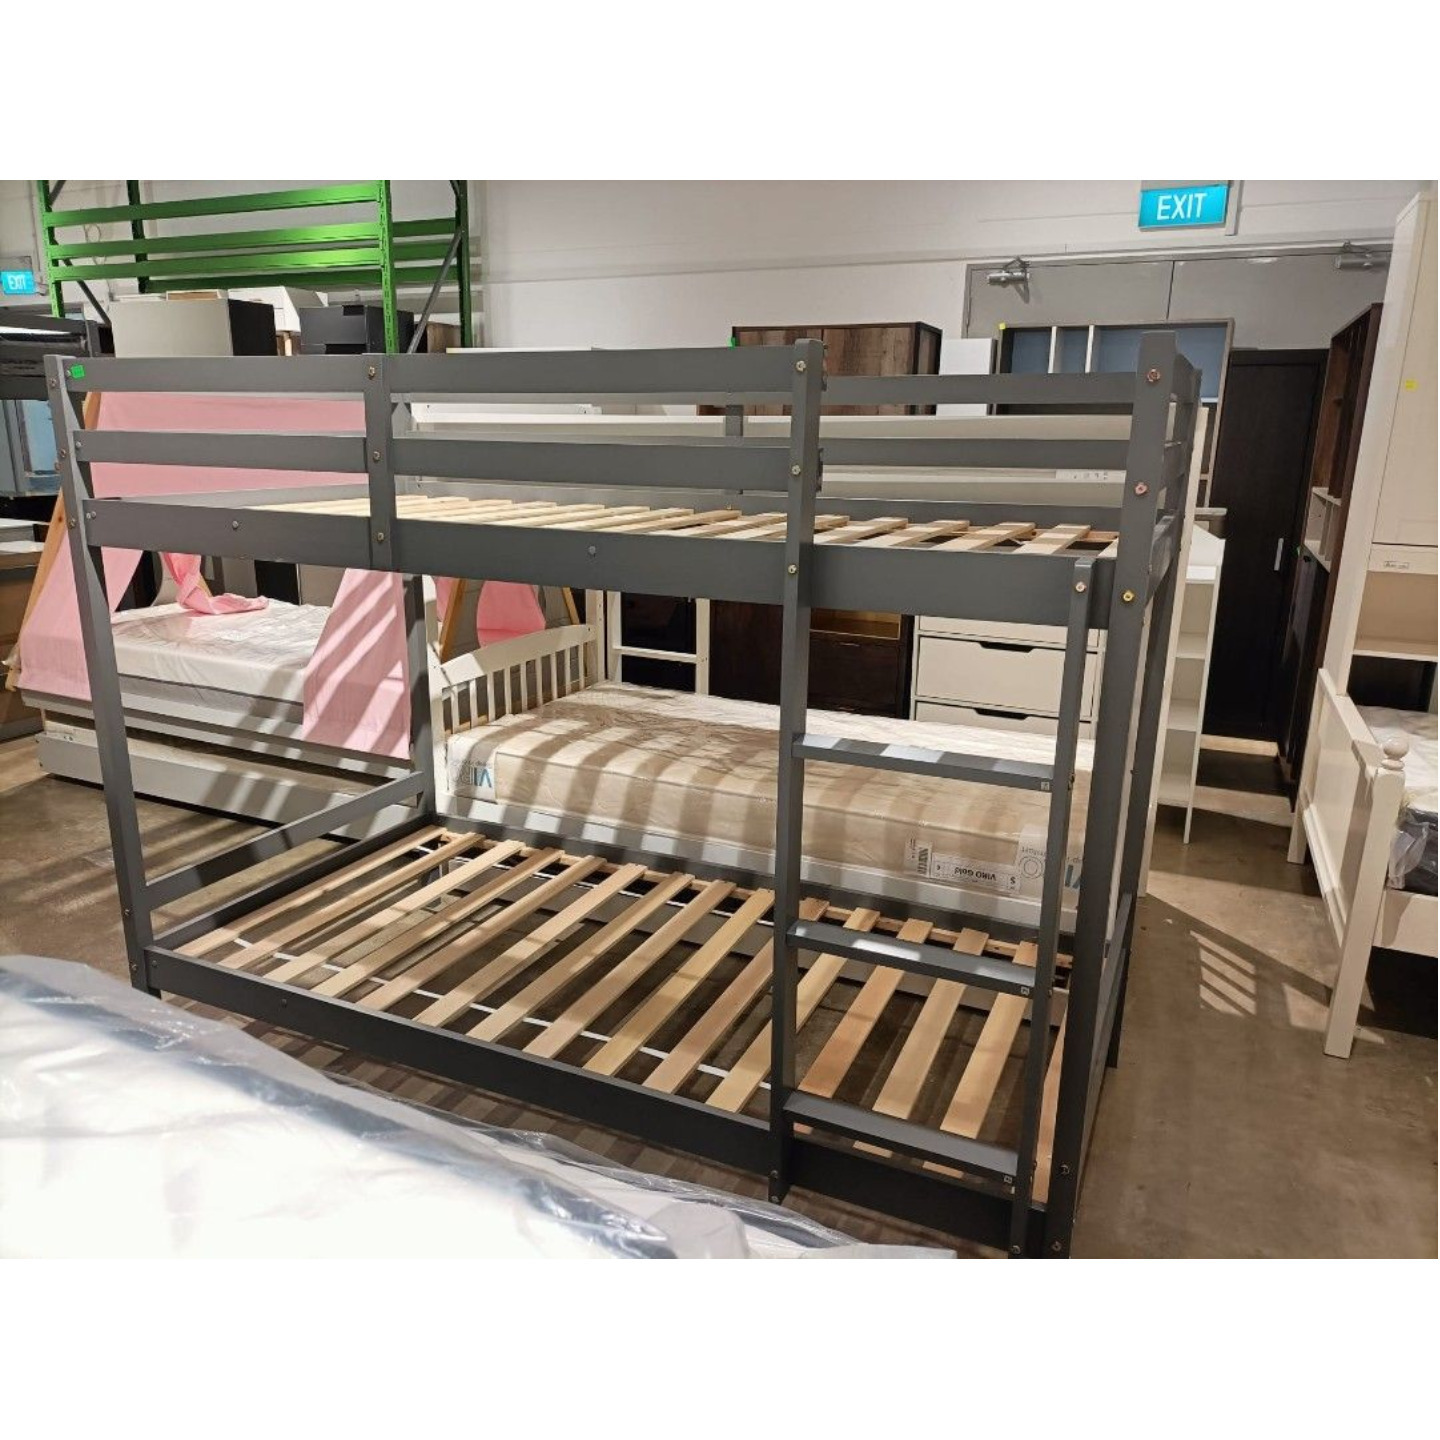 RUZENDA Double Deck Wooden Bunk Bedframe in GREY